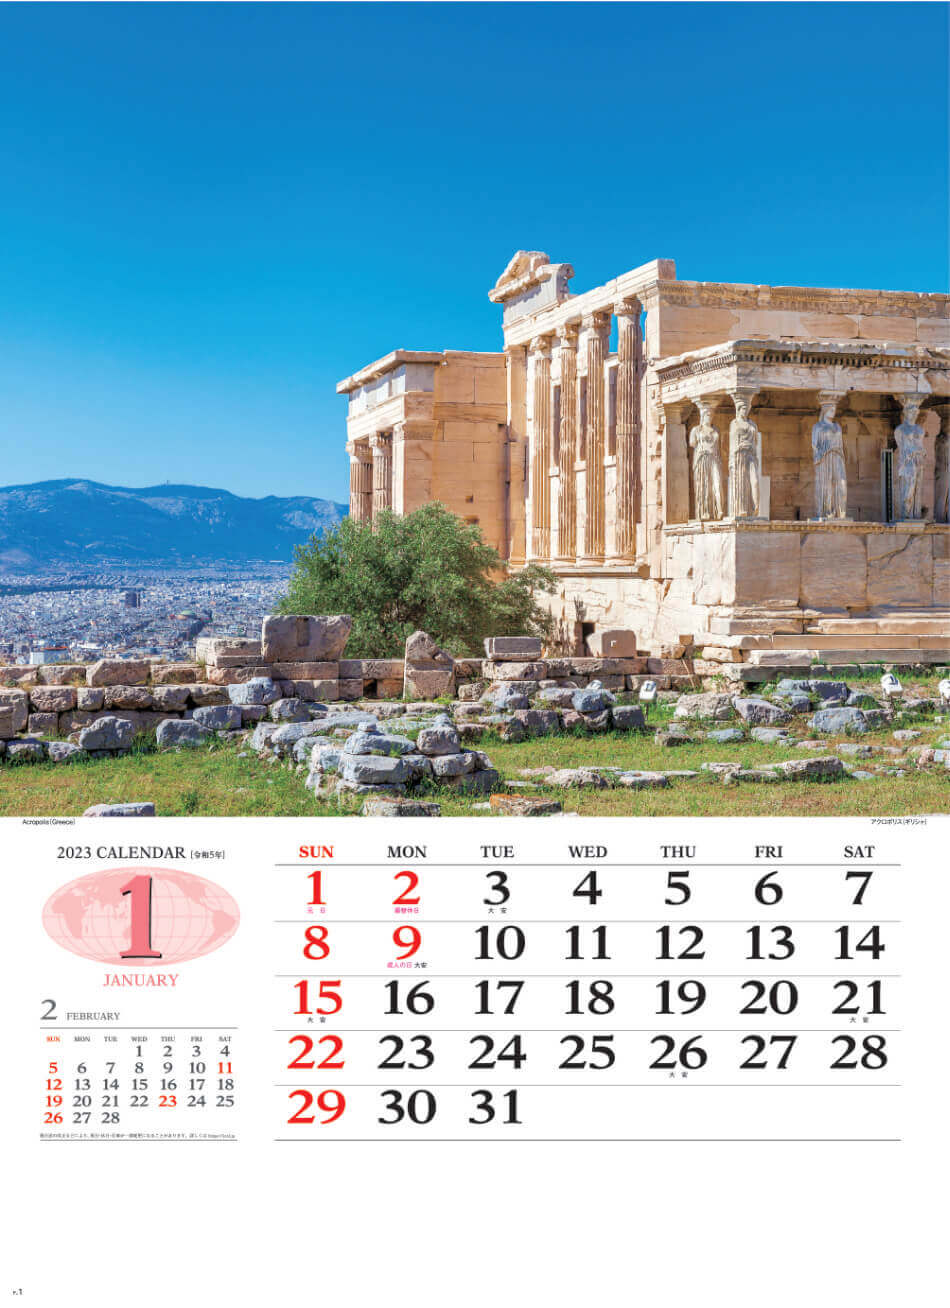 1月 アクロポリス(ギリシャ) 世界の景観 2023年カレンダーの画像